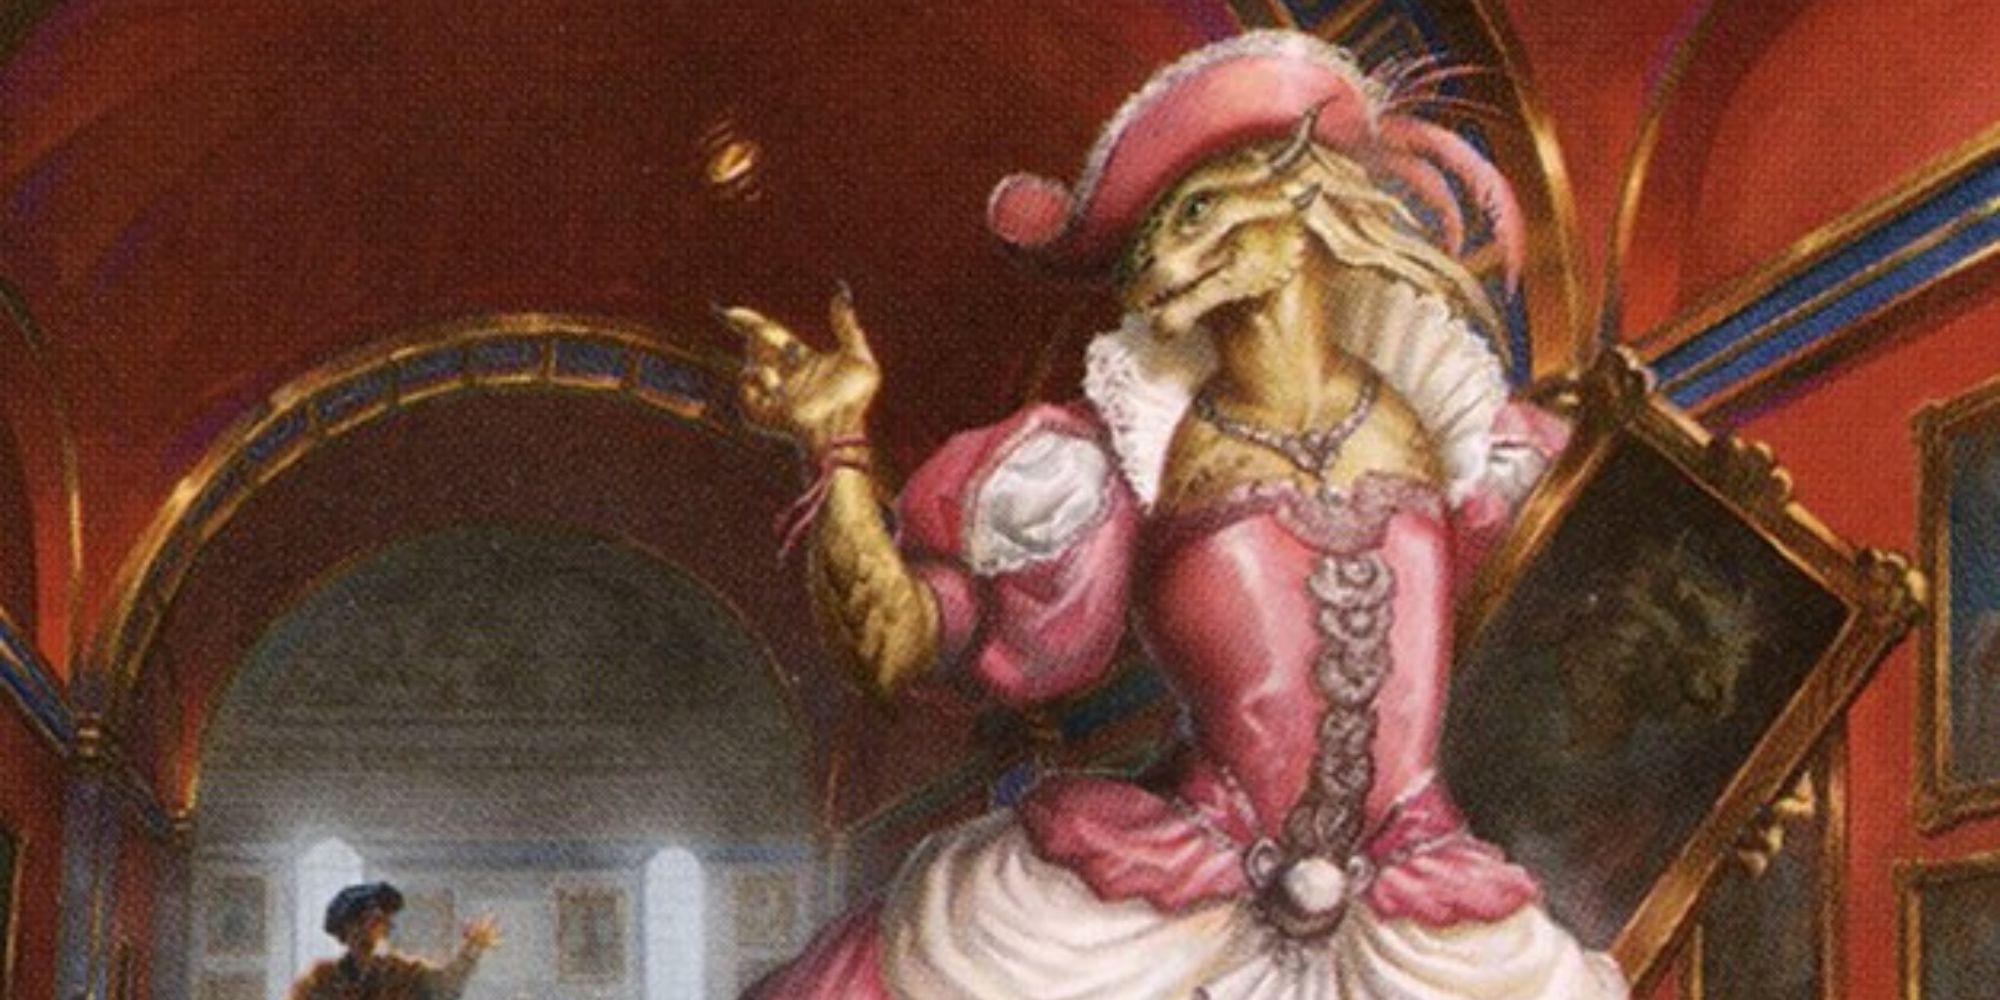 Ein Drachengeborener in einem rosa Kleid geht selbstbewusst mit einem Gemälde davon, während eine Gestalt im Hintergrund versucht, sie aufzuhalten.